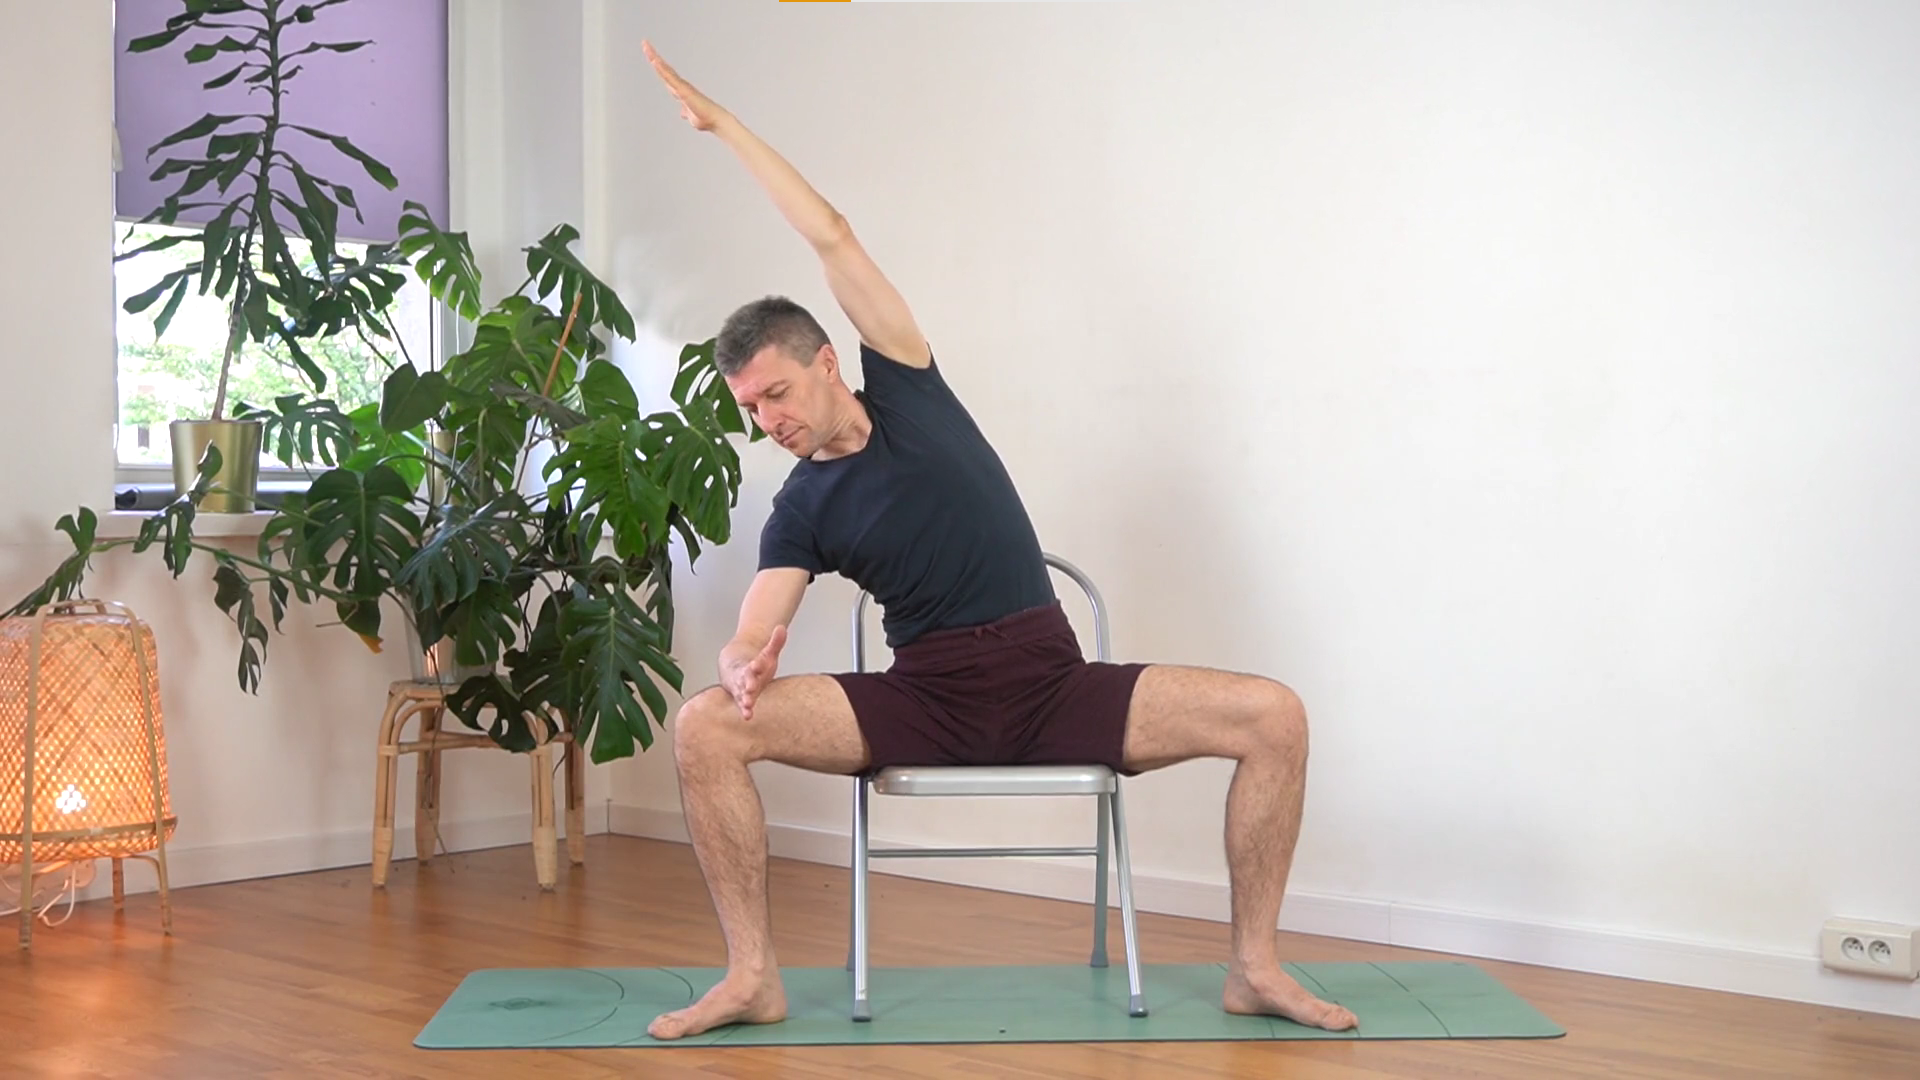 Zajęcia: Kurs jogi dla kręgosłupa